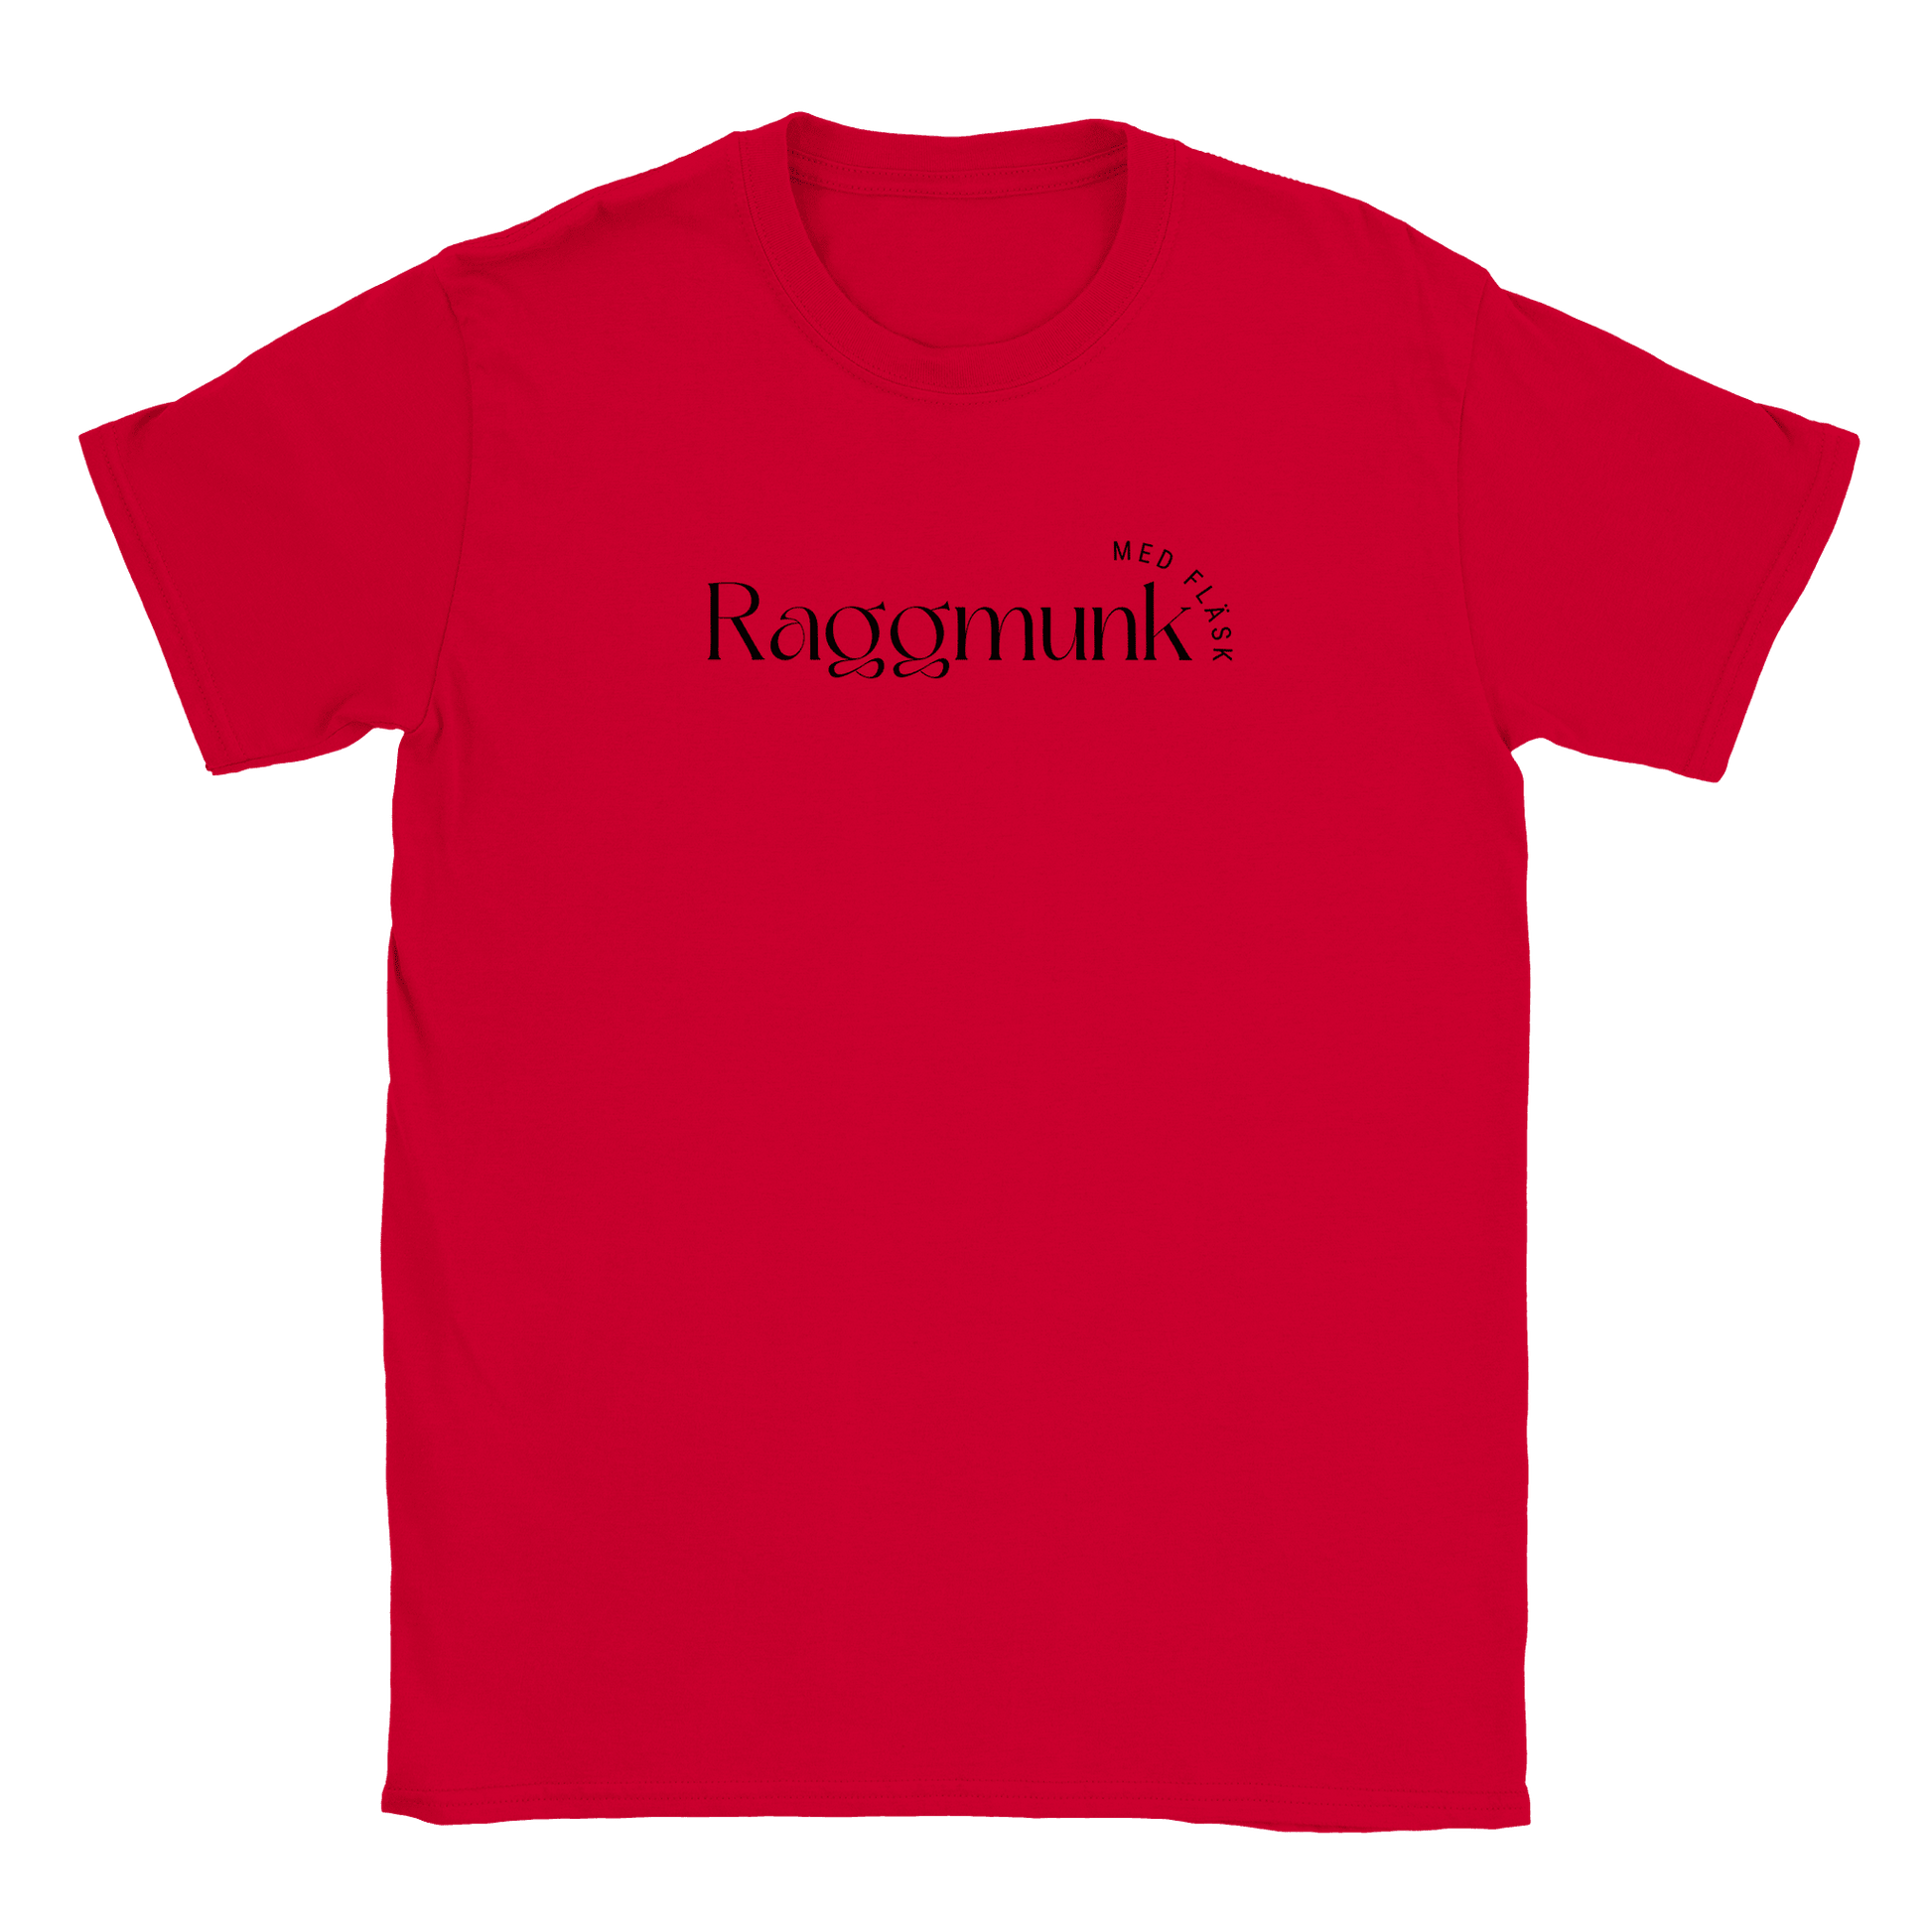 Raggmunk med fläsk - T-shirt Röd